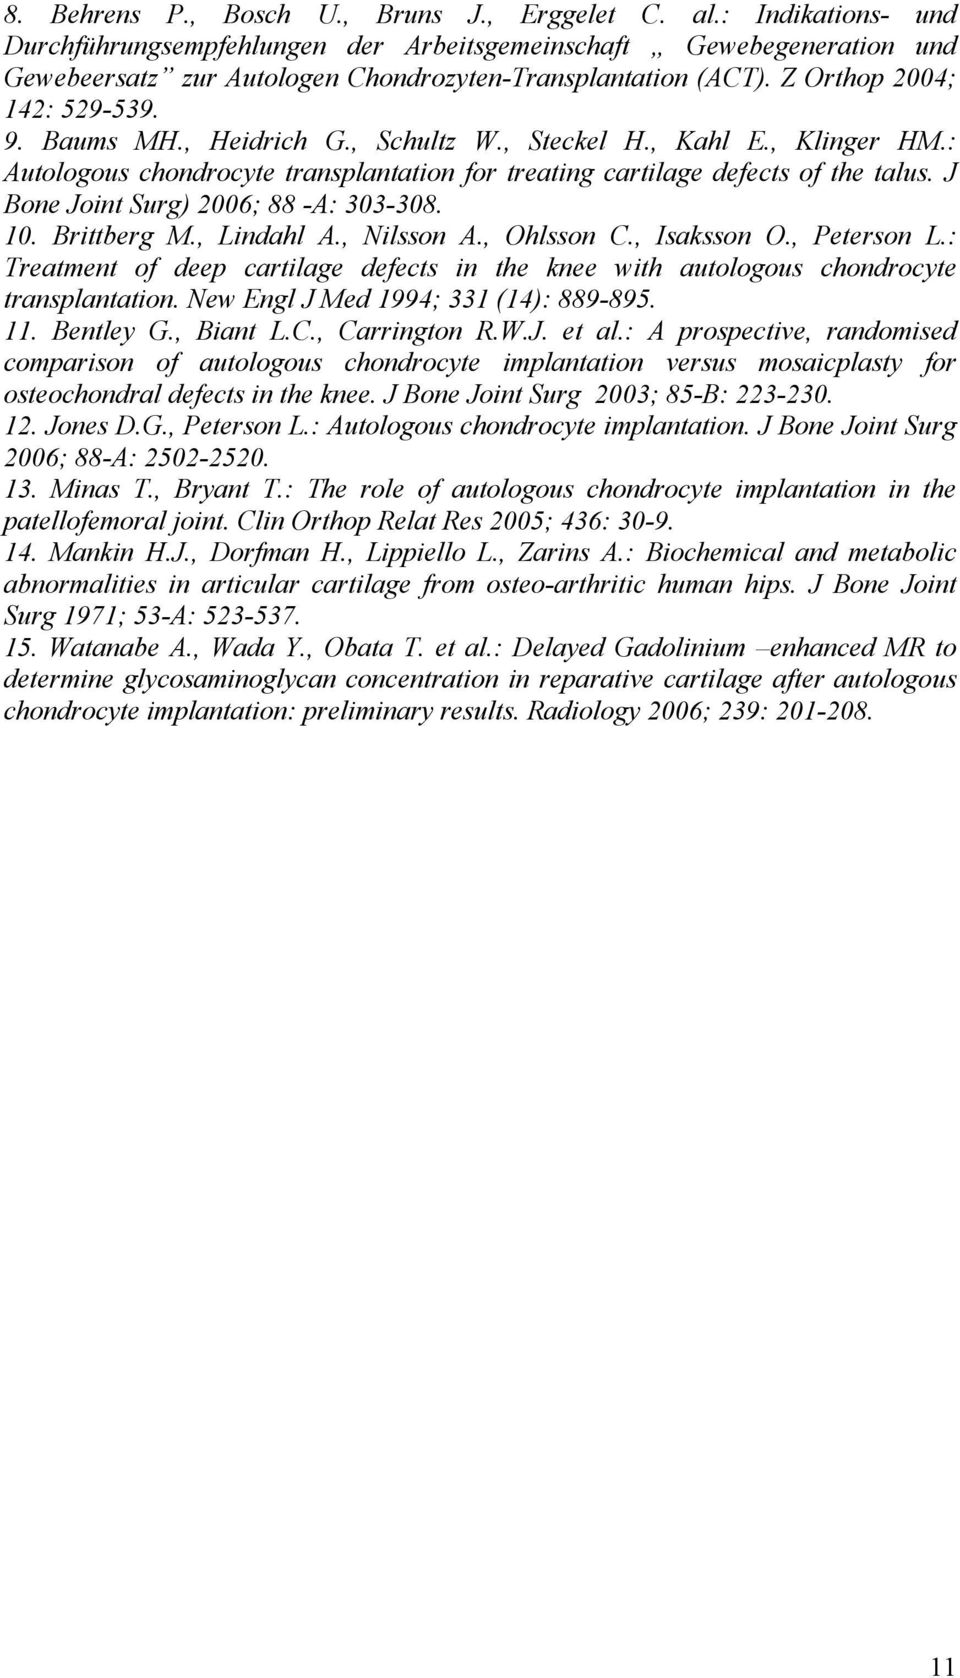 , Heidrich G., Schultz W., Steckel H., Kahl E., Klinger HM.: Autologous chondrocyte transplantation for treating cartilage defects of the talus. J Bone Joint Surg) 2006; 88 -A: 303-308. 10.